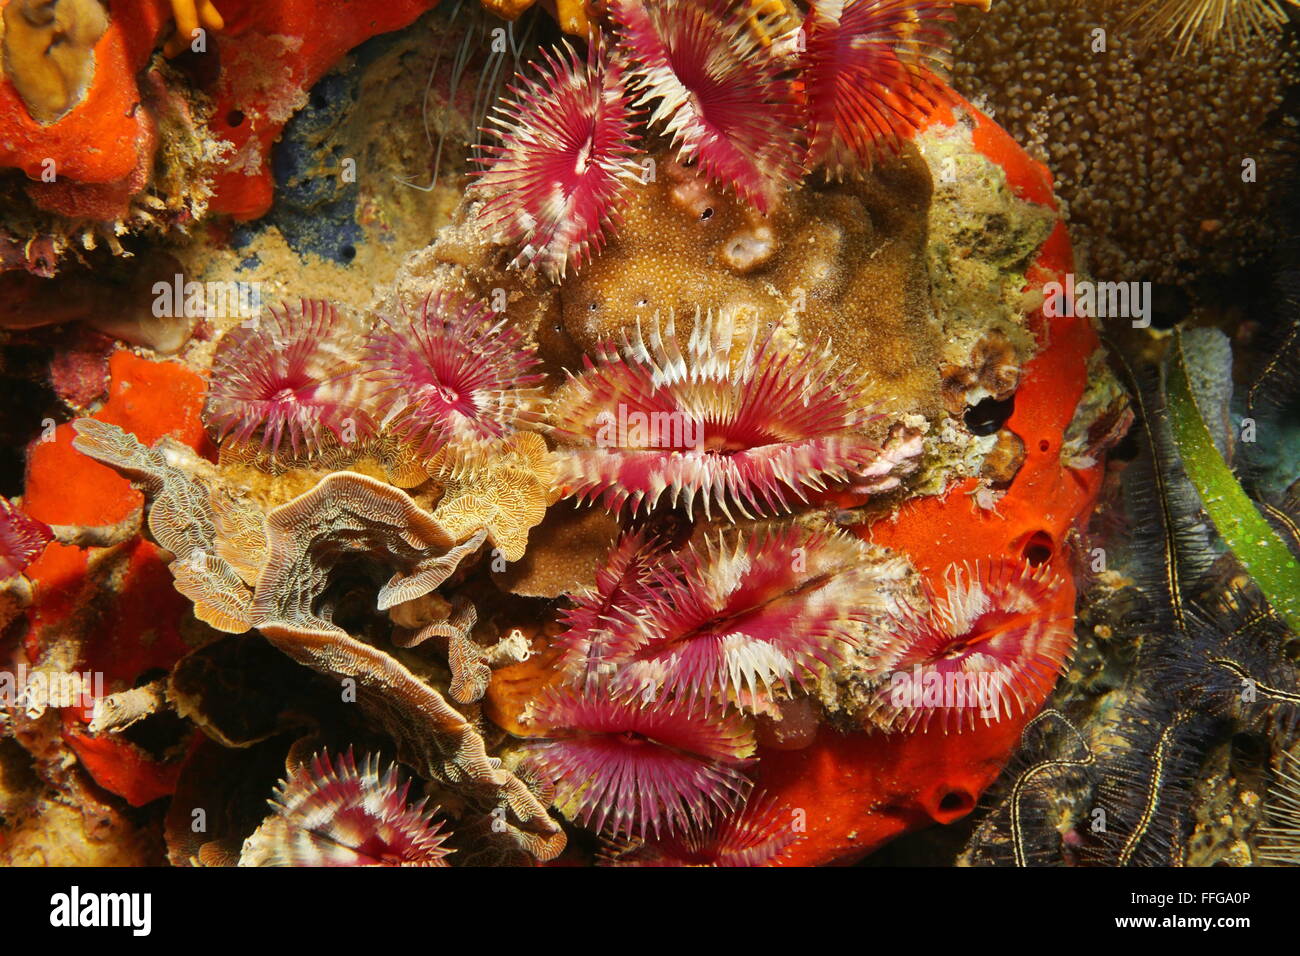 La vie marine sous-marine colorée, split-couronne plumeau vers, Anamobaea oerstedi, sur un récif de corail, mer des Caraïbes Banque D'Images